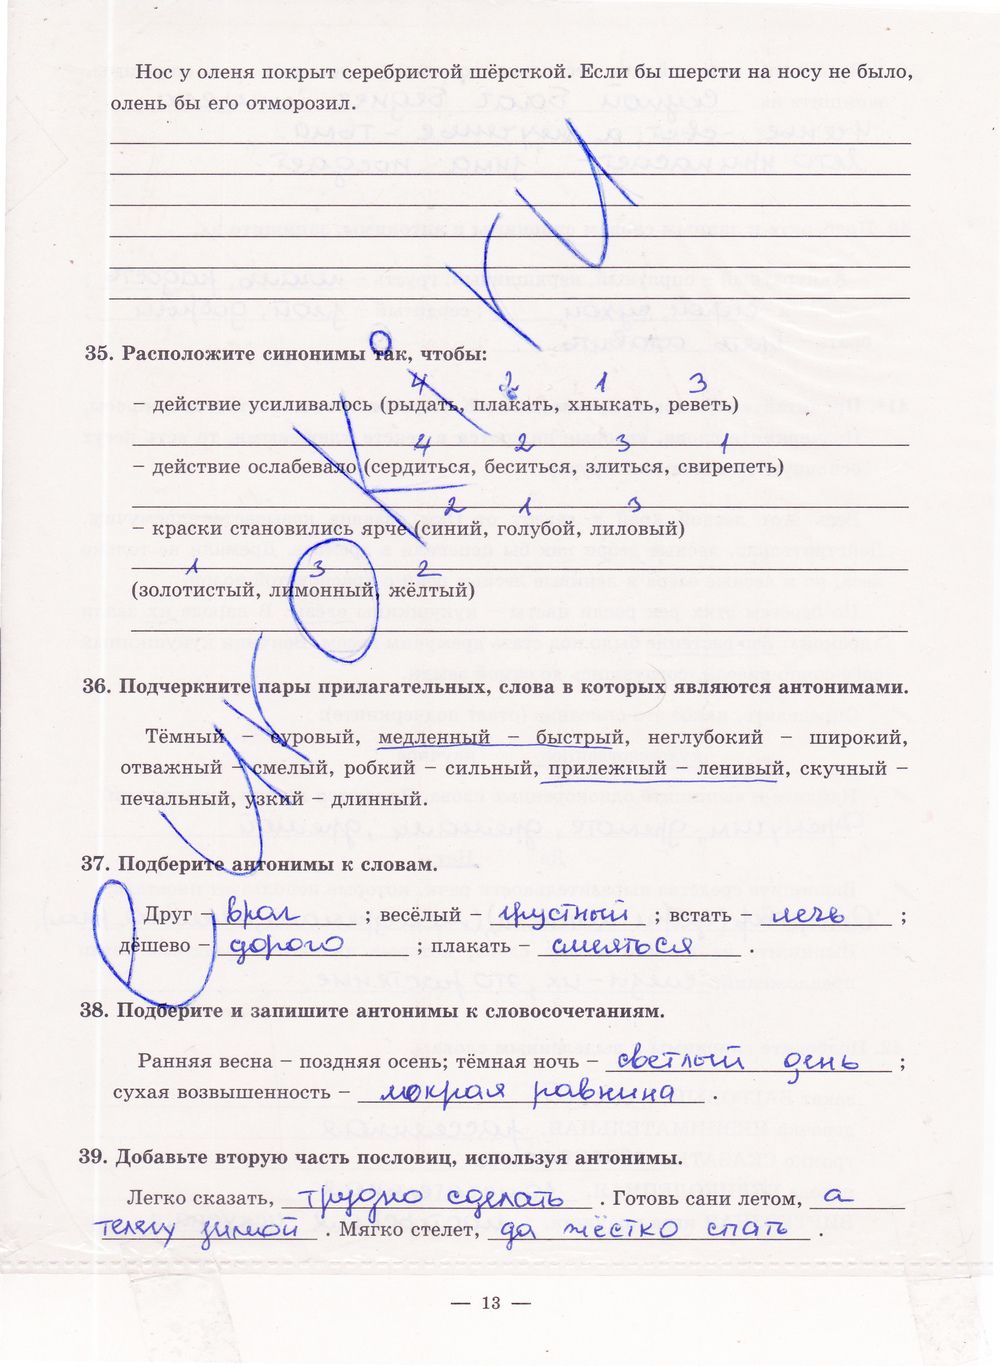 ГДЗ Русский язык 5 класс - стр. 13